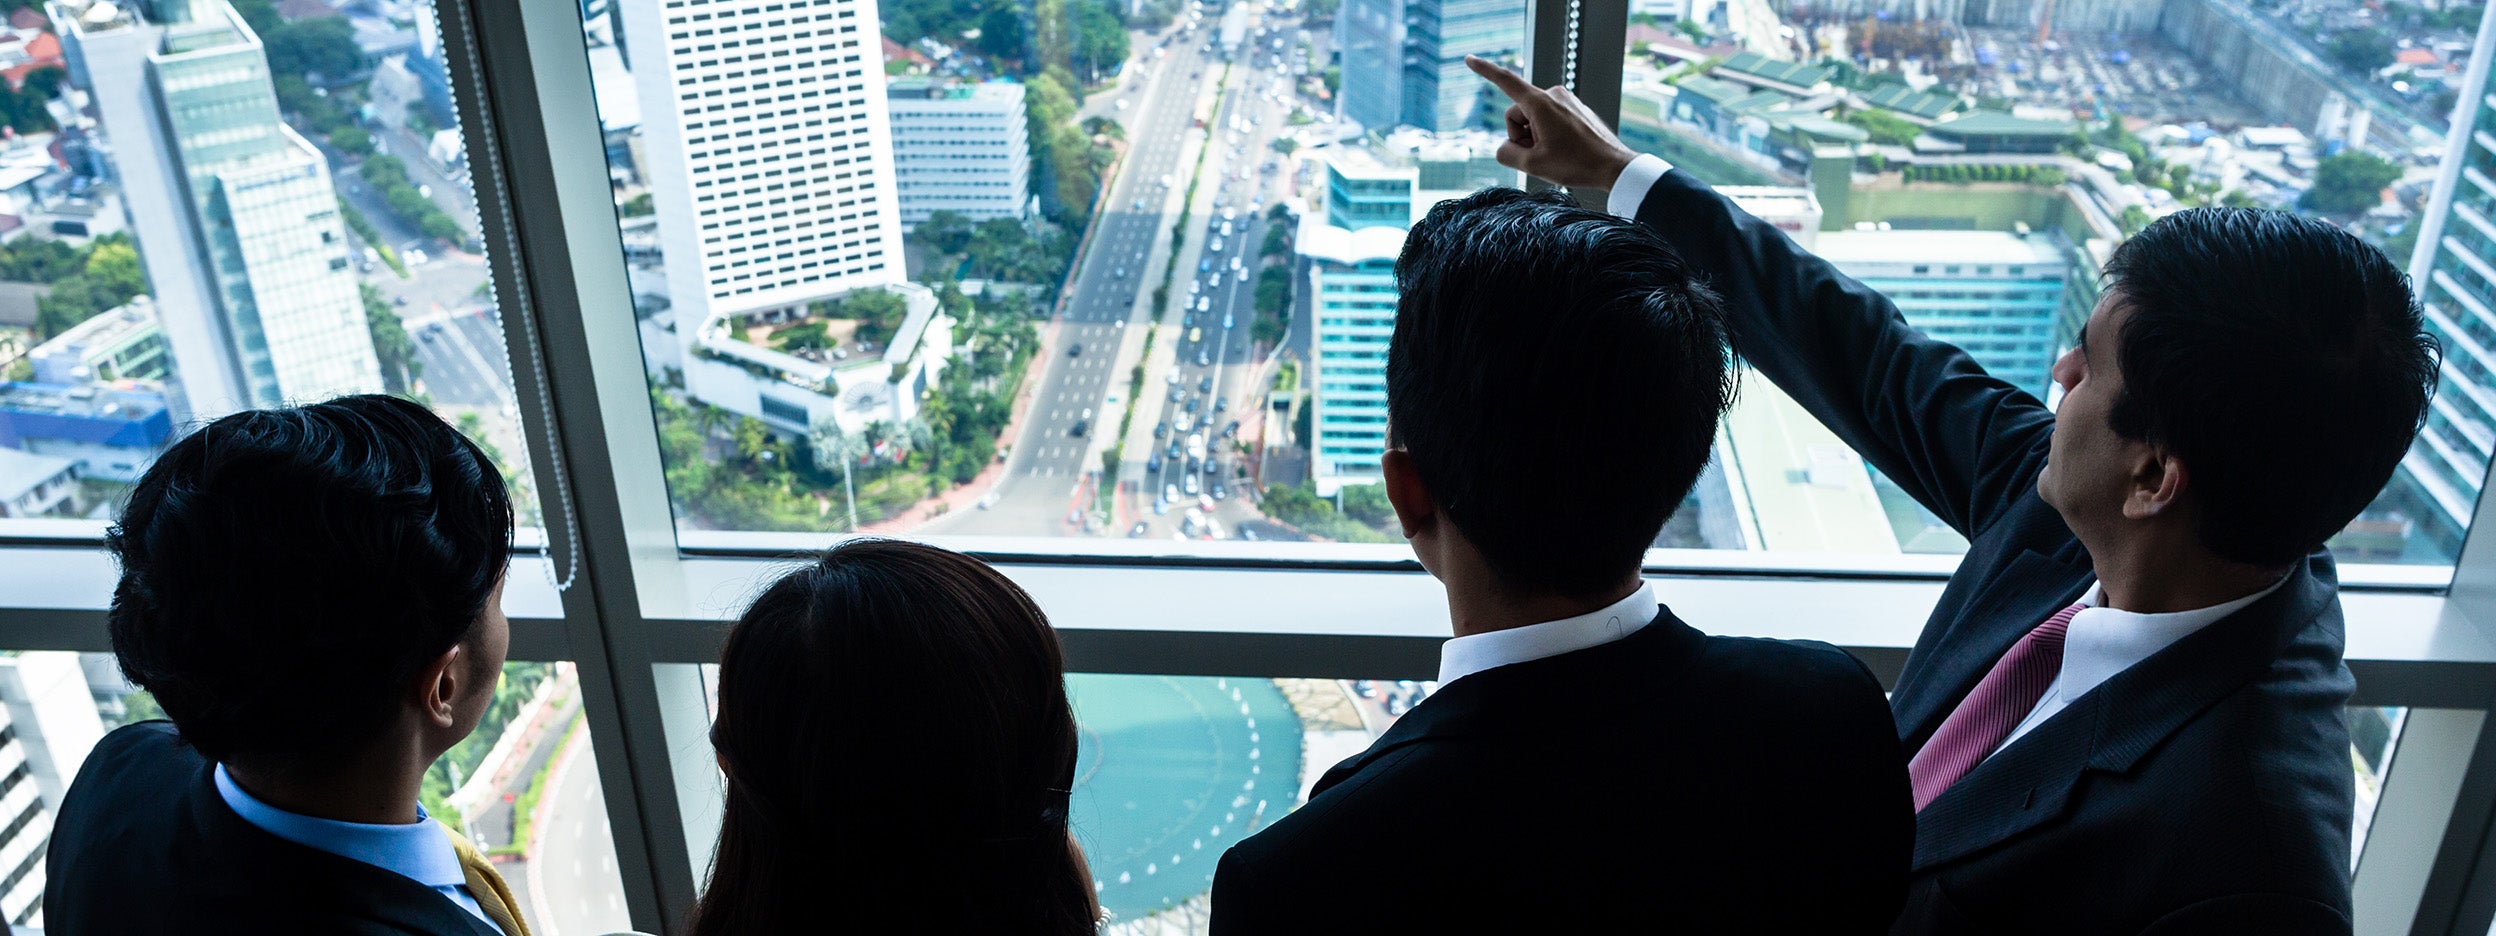 Groupe d’hommes d’affaires asiatiques regardant les immeubles de la ville